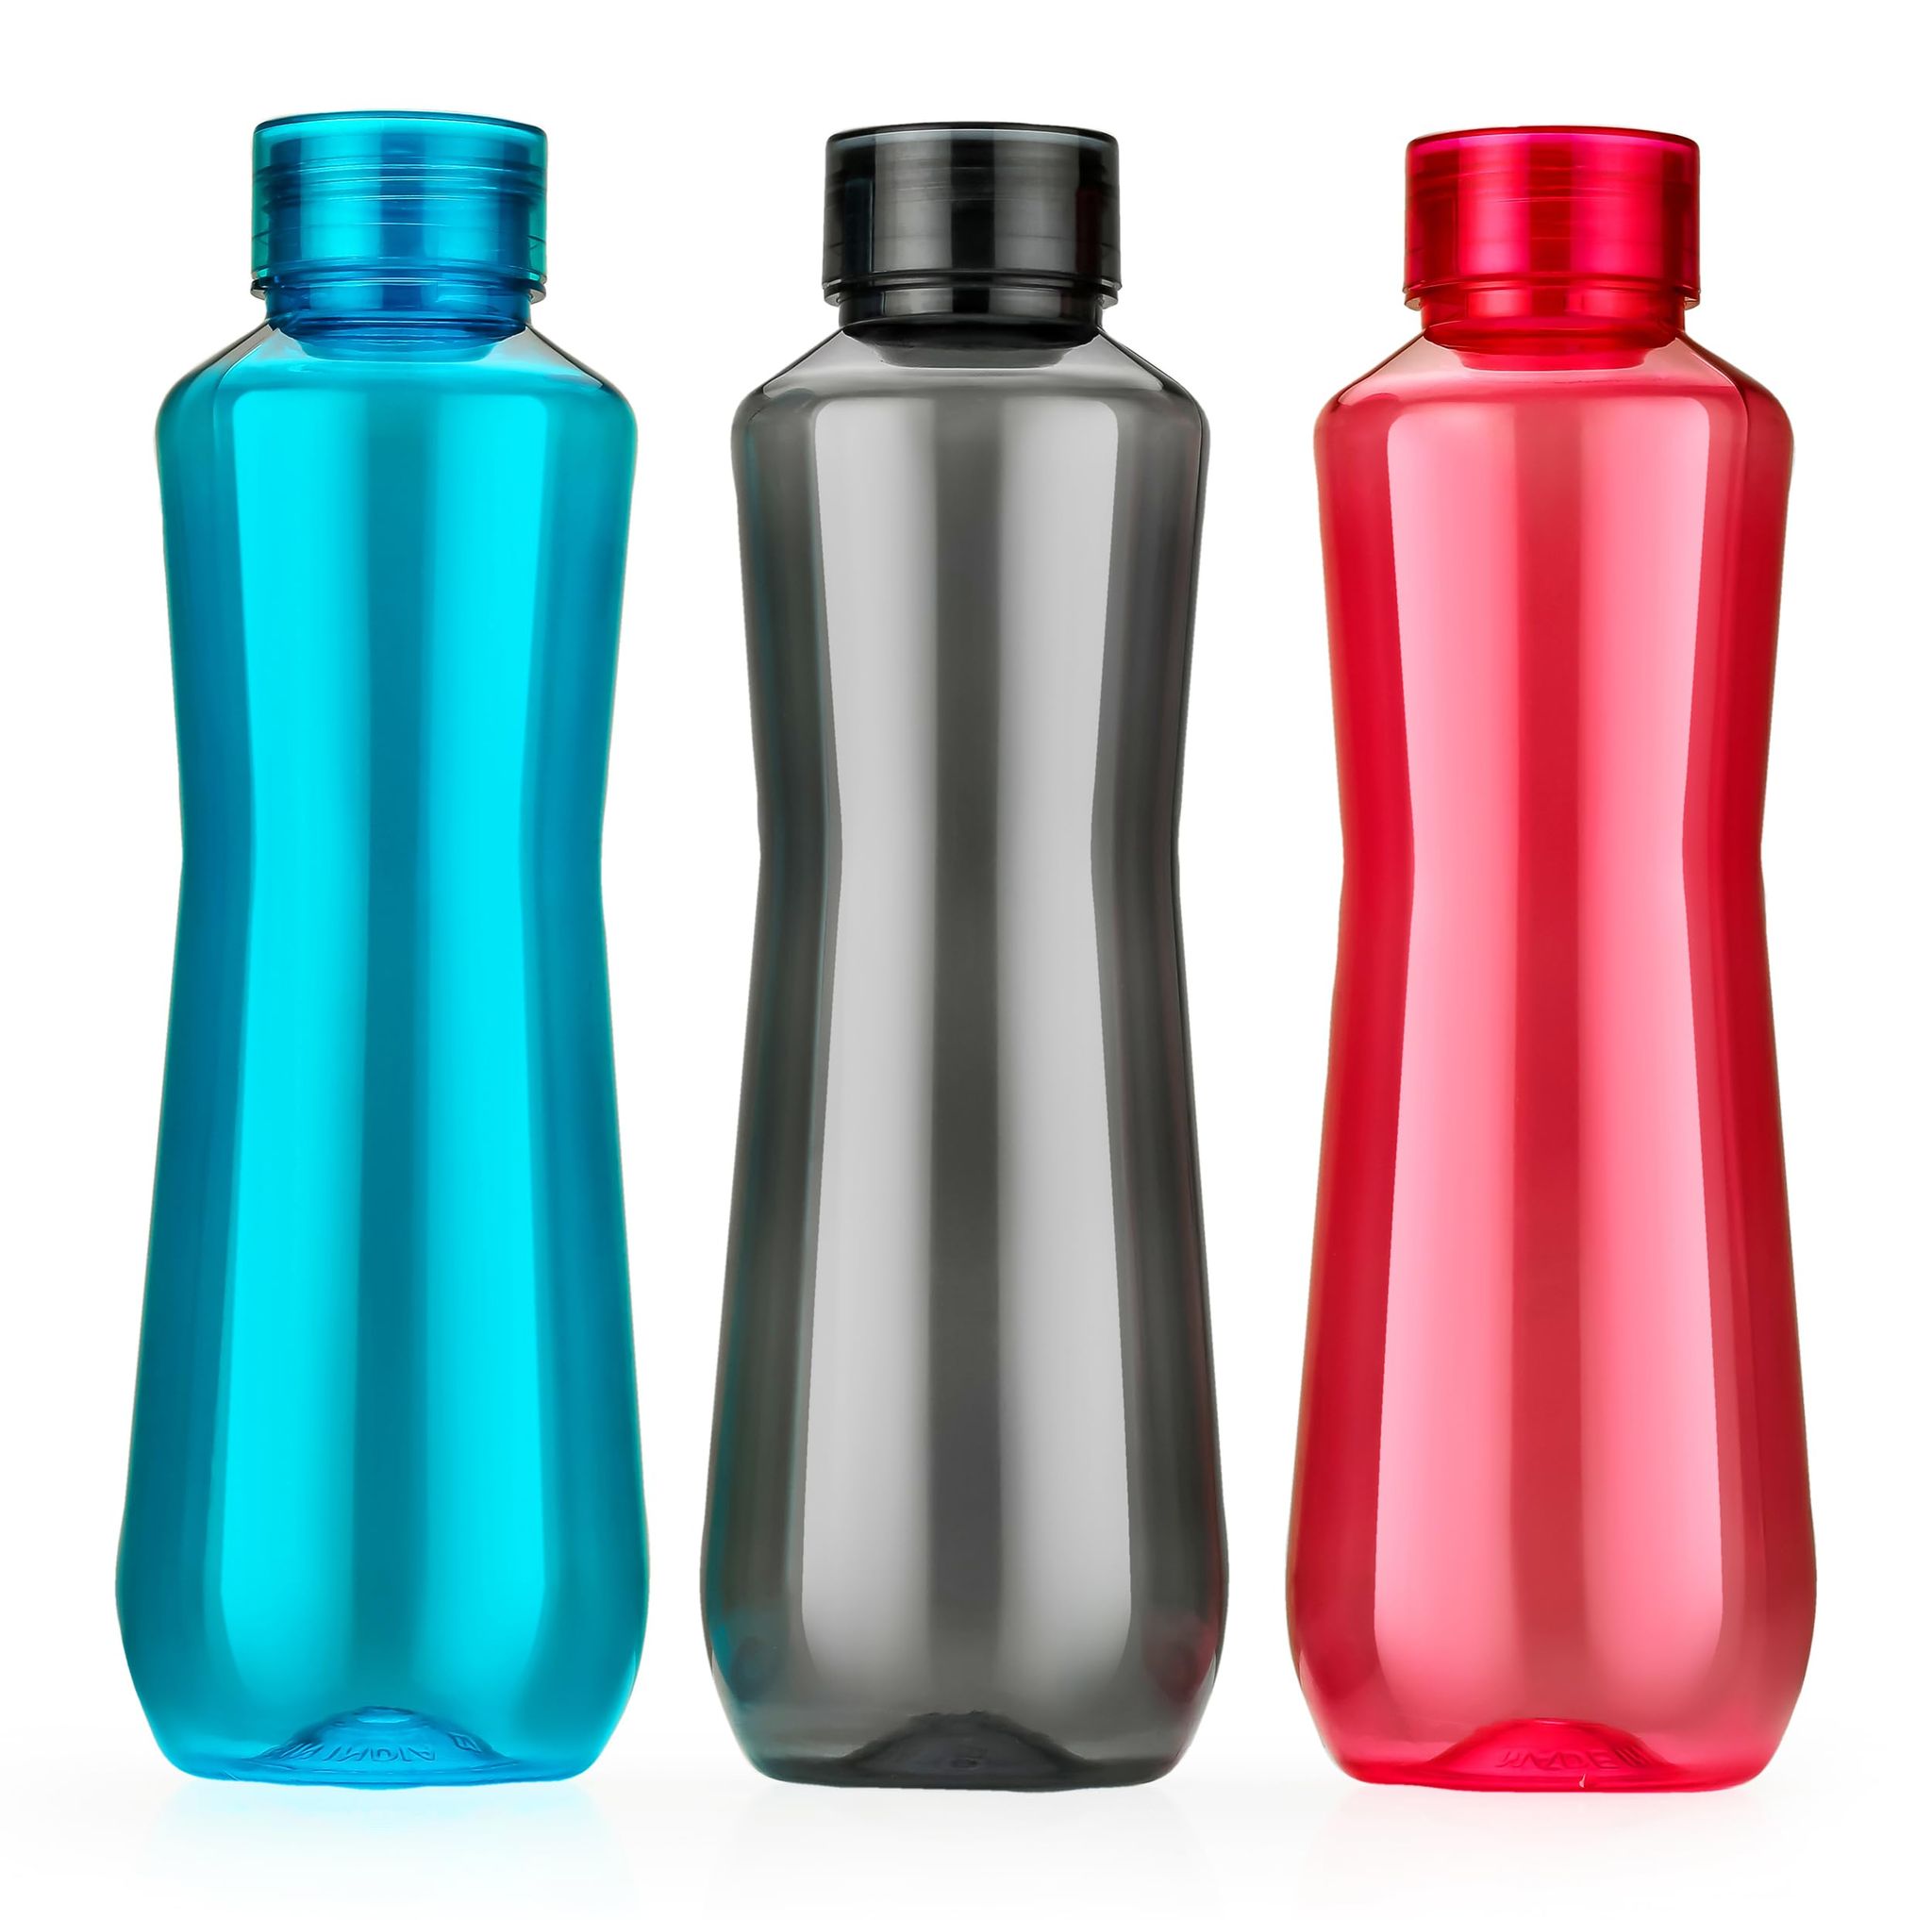 HASHONE Water Bottle For Home, Office & School 1 Litre Each | BPA Free | 100% Leak Proof Bottle